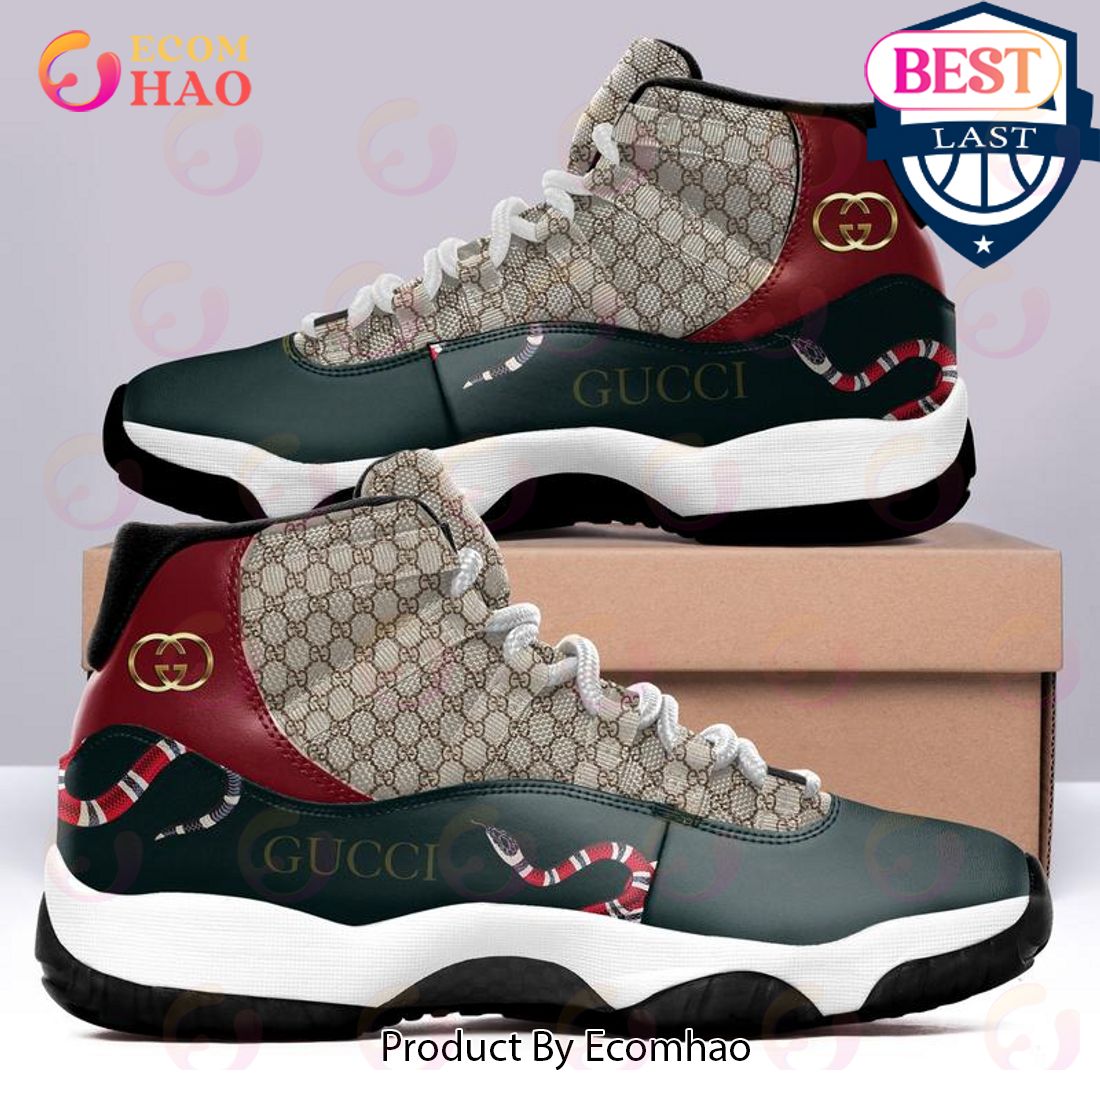 Gucci Ver 5 Air Jordan 11 Sneaker